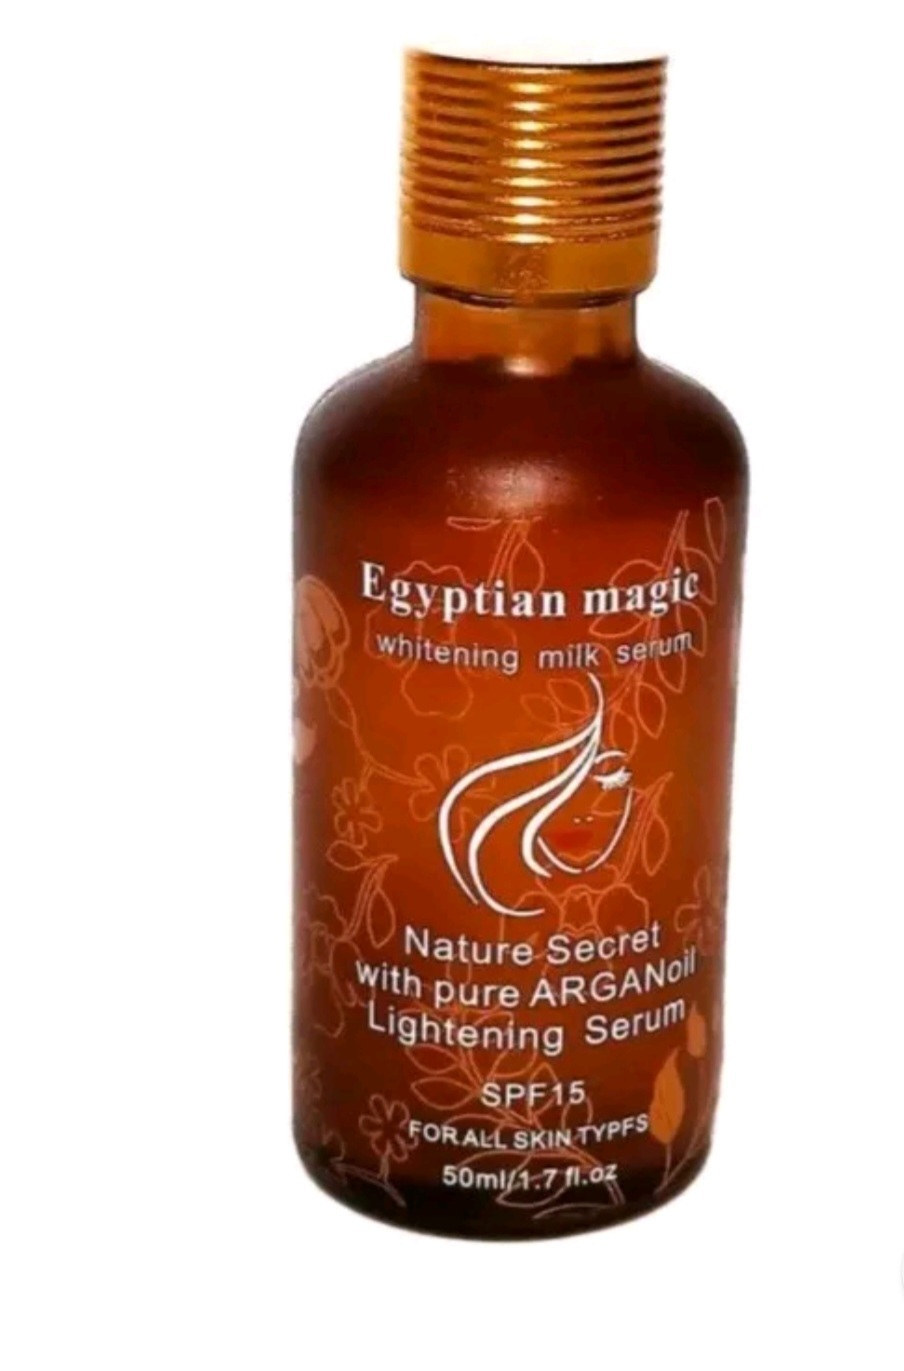 Egyptian magic whitening milk serum  - $16.00